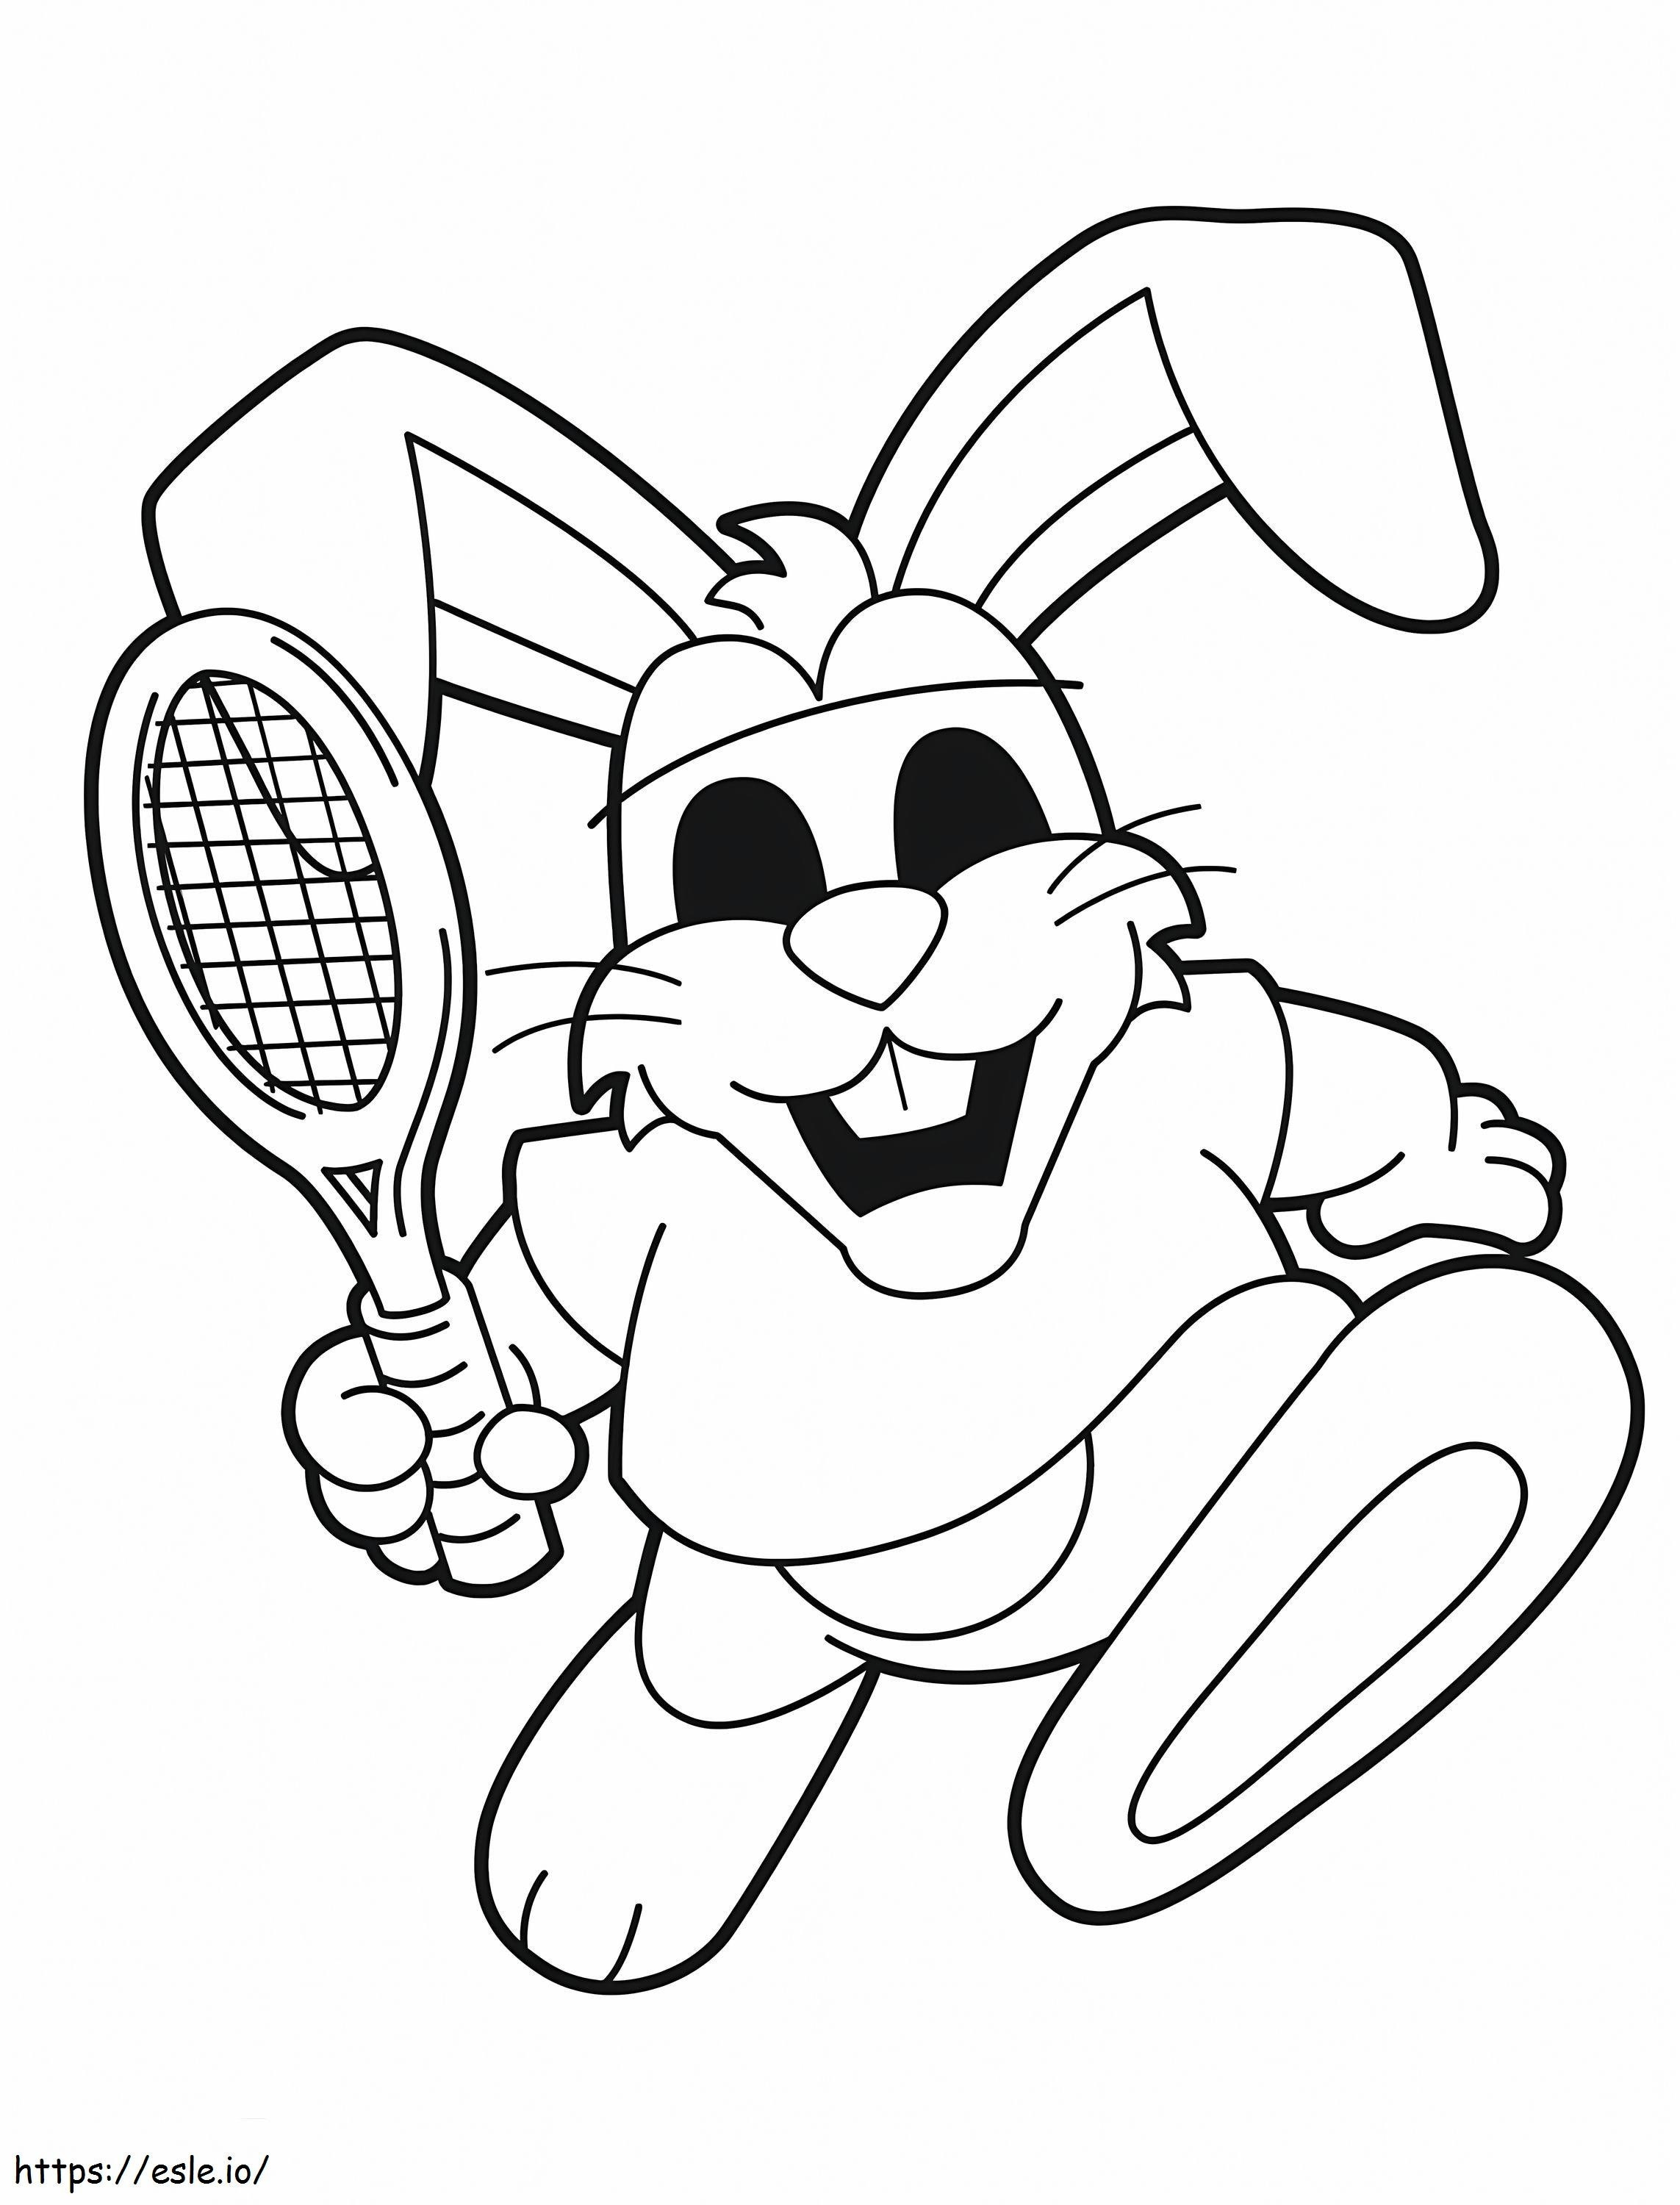 Coniglio che gioca a tennis da colorare